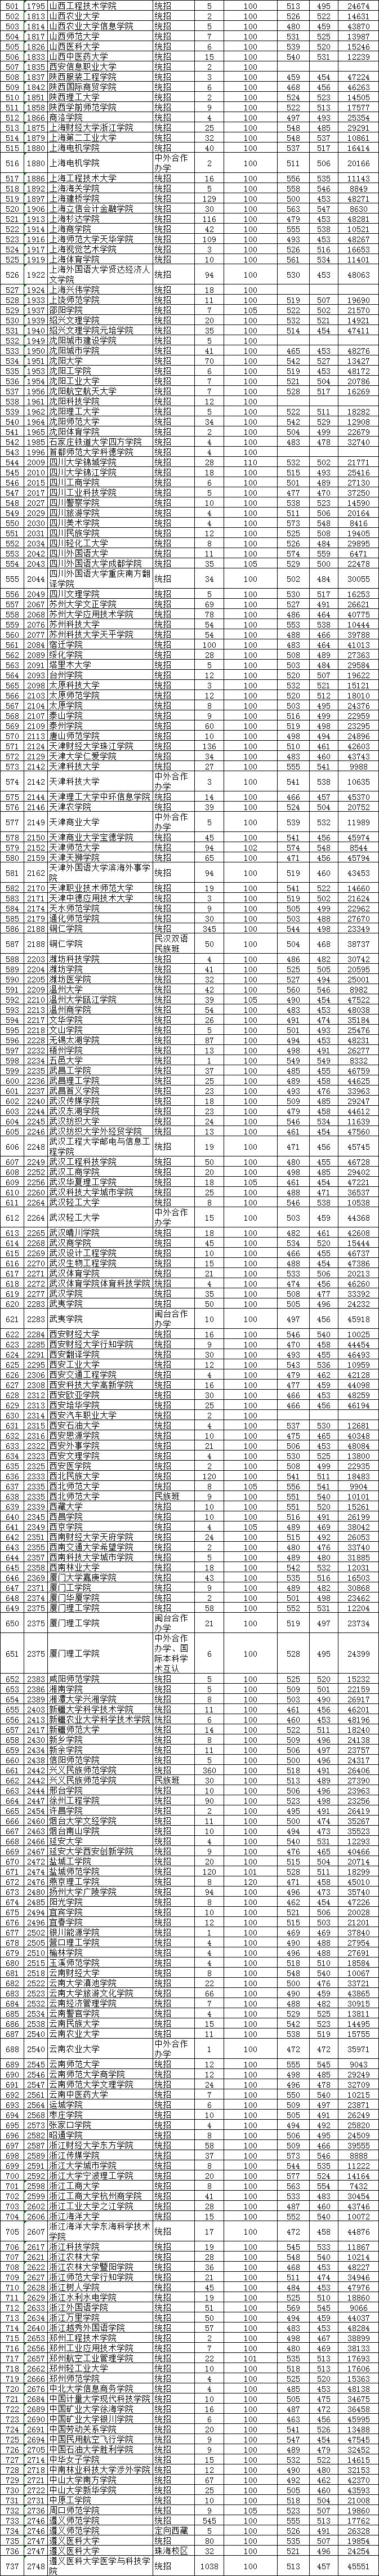 2020贵州高考二批投_贵州省2020年普通高校招生第二批本科院校网上补报